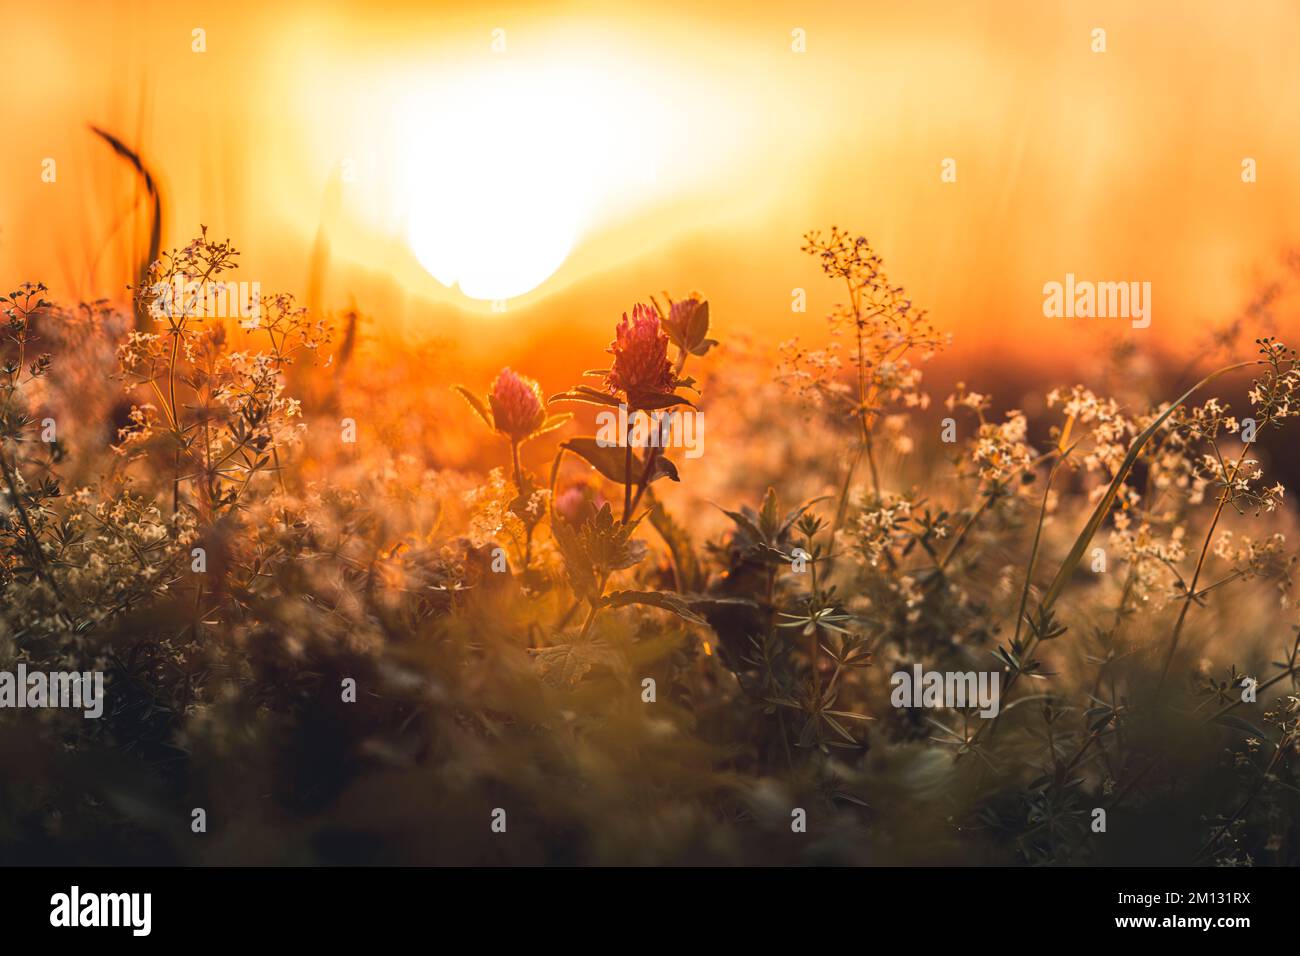 Trébol en flor primer plano fondo borroso con puesta de sol, ambiente de verano en el jardín Foto de stock